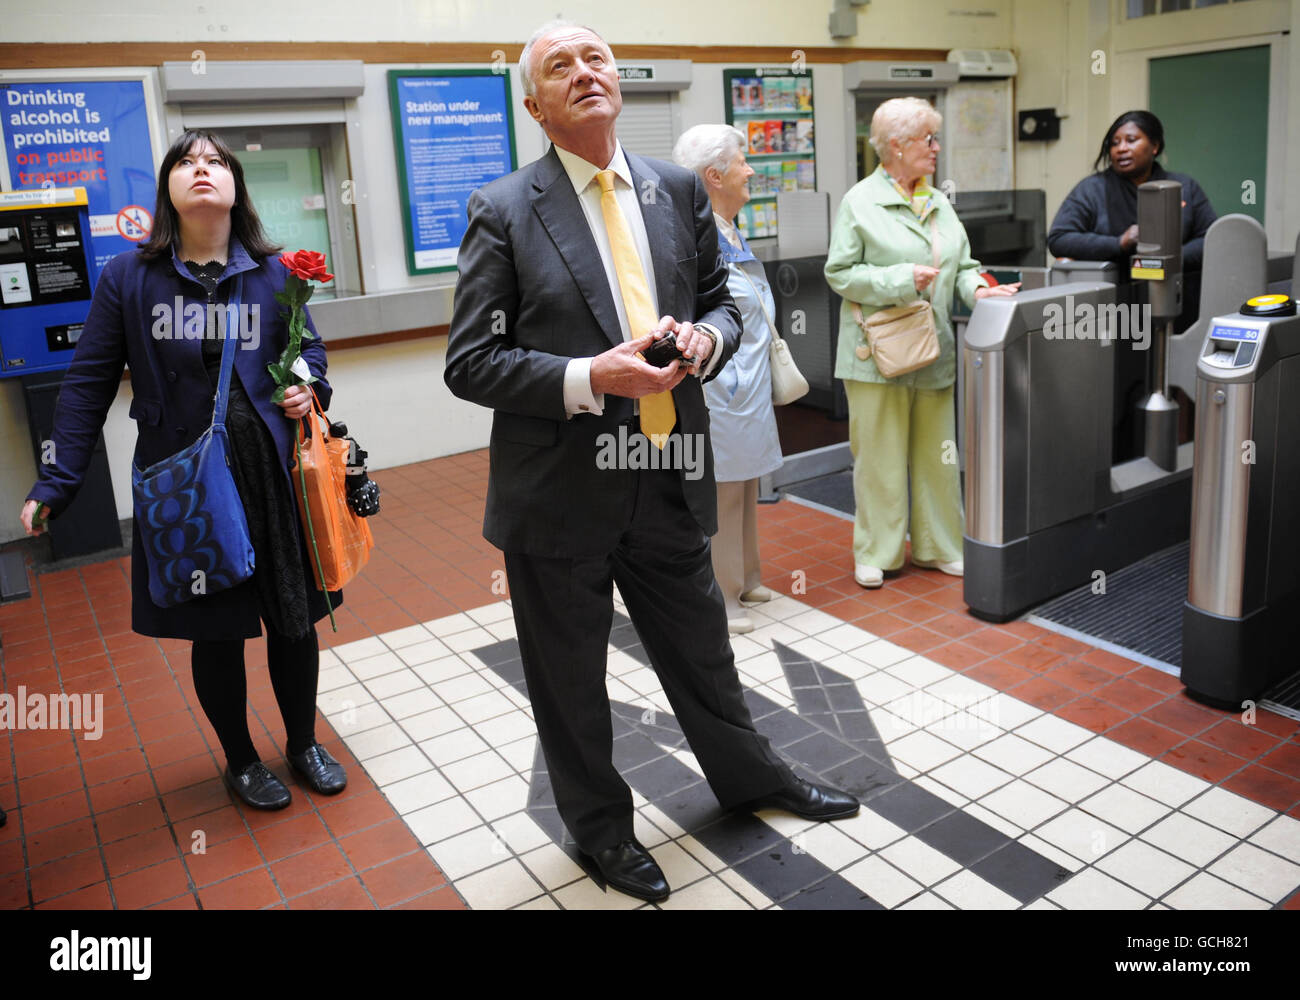 L'ancien maire de Londres Ken Livingstone attend son train à la gare de West Croydon à Londres alors qu'il lance sa candidature pour le poste de candidat travailliste une fois de plus en 2012. Banque D'Images